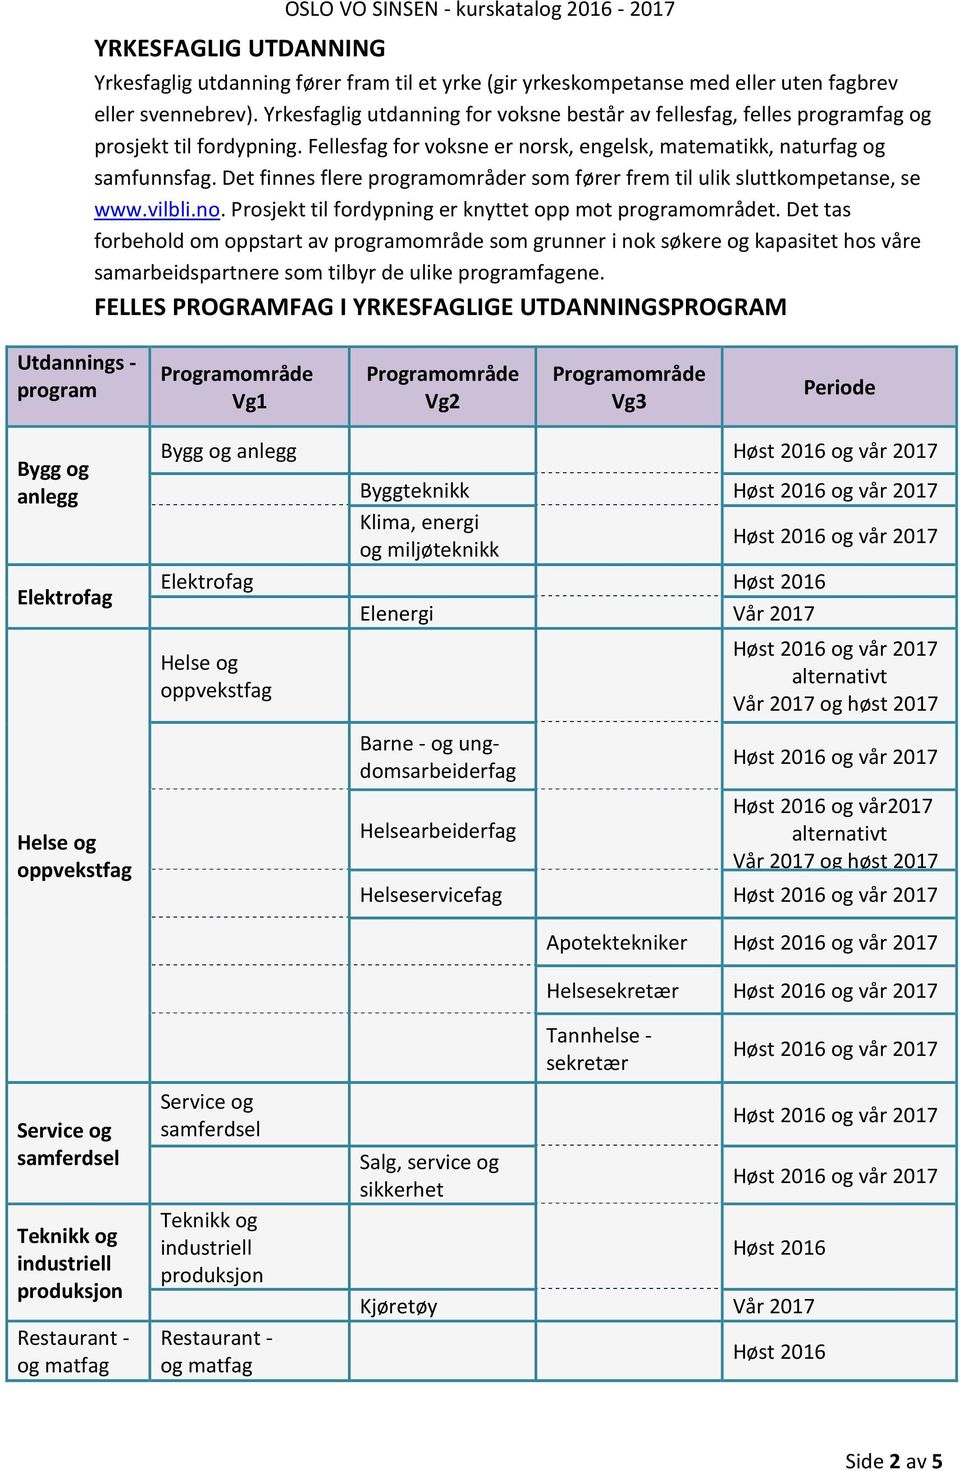 Det finnes flere programområder som fører frem til ulik sluttkompetanse, se www.vilbli.no. Prosjekt til fordypning er knyttet opp mot programområdet.